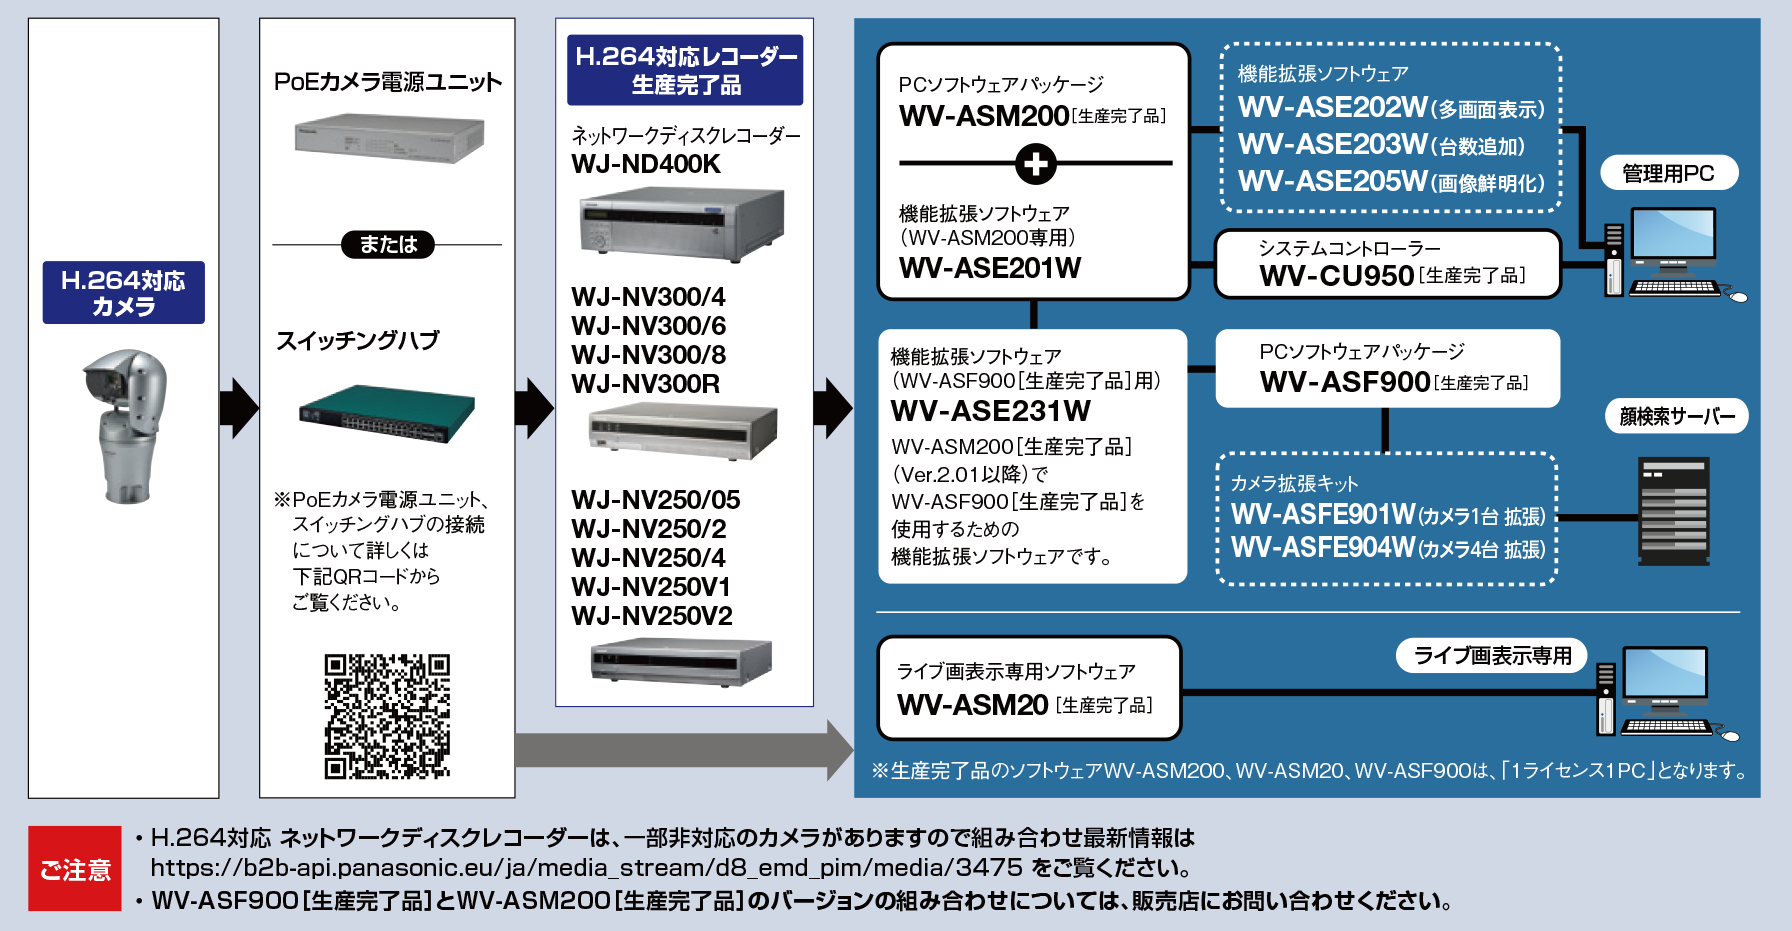 WV-ASM200シリーズ専用拡張ソフトウェア WV-ASE201W / ASE202W / ASE203W / ASE205W / ASE231W  - 映像管理ソフト 製品一覧 - 監視・防犯システム - パナソニック コネクト